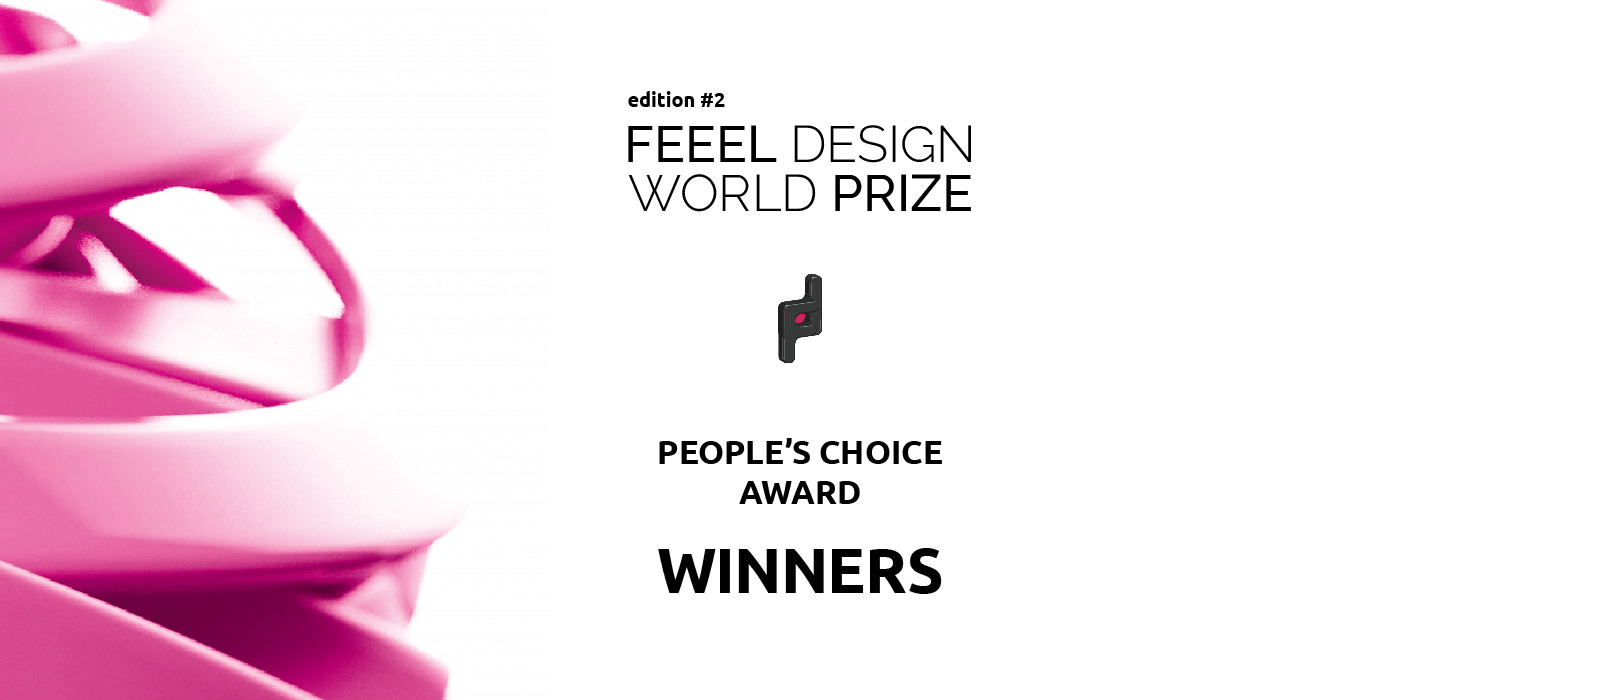 People’s Choice Award Winners Announced